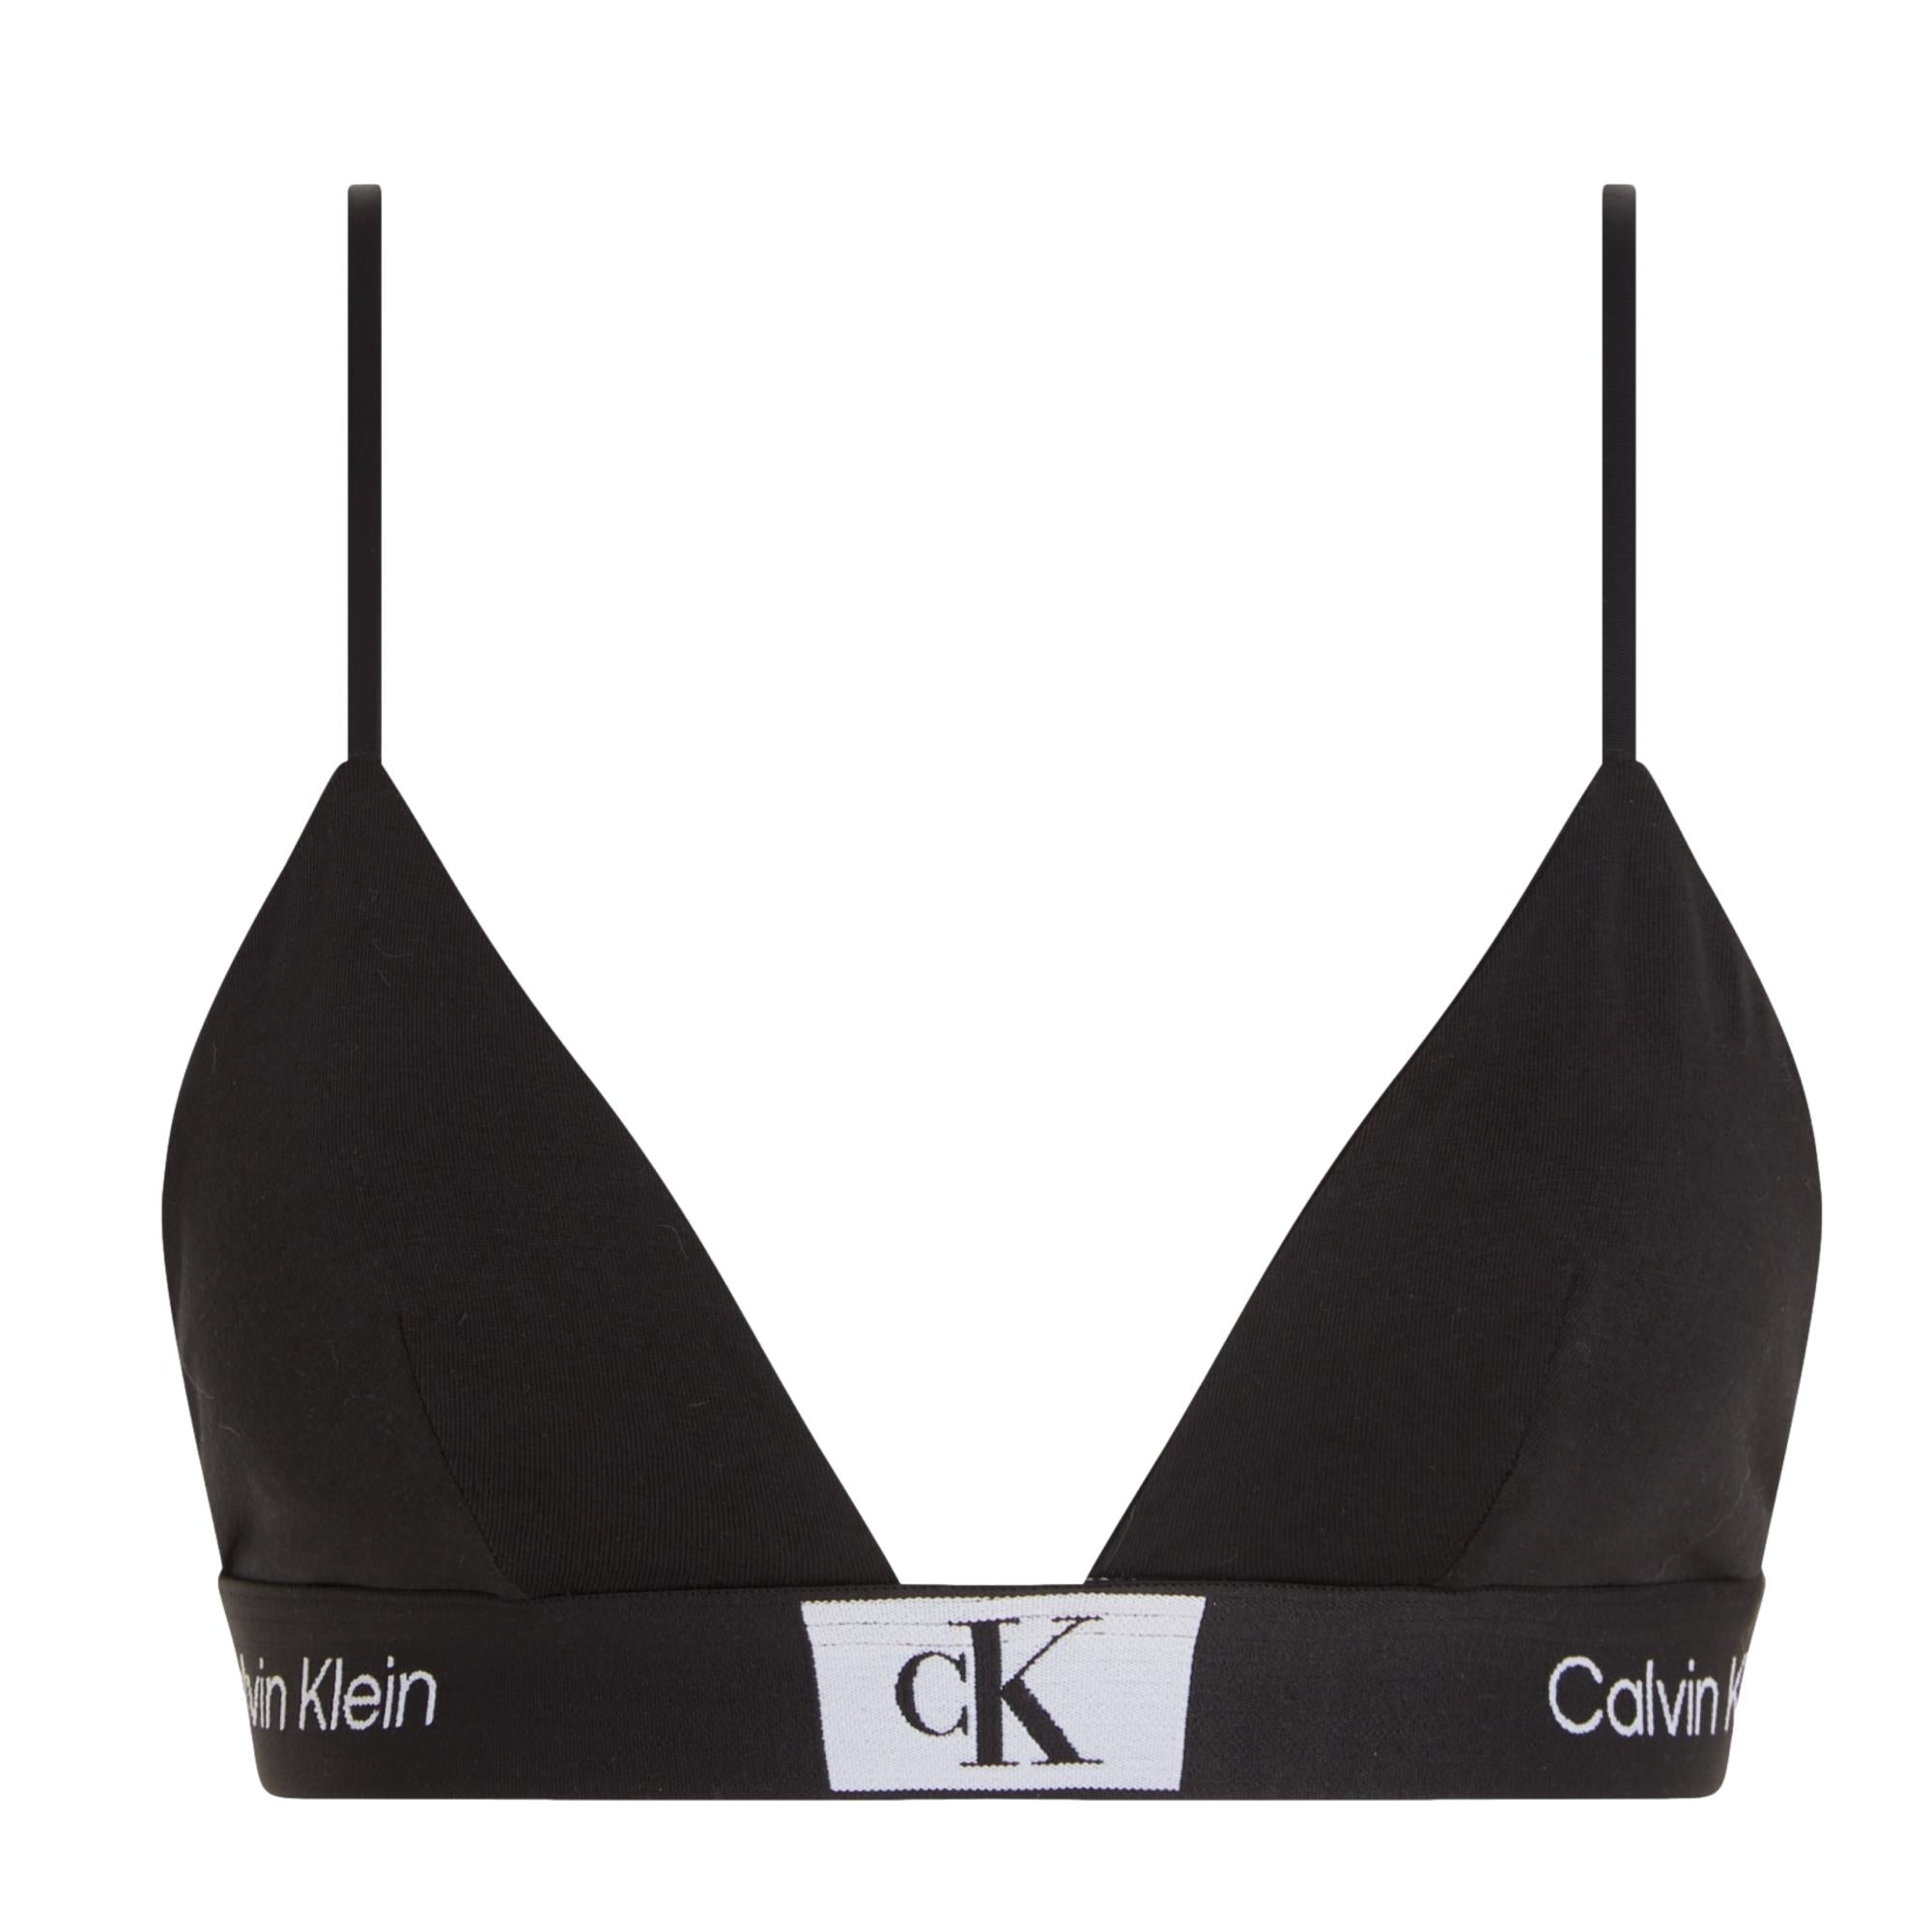 Calvin Klein - CK 96 - Brassière triangle non doublée - Blanc